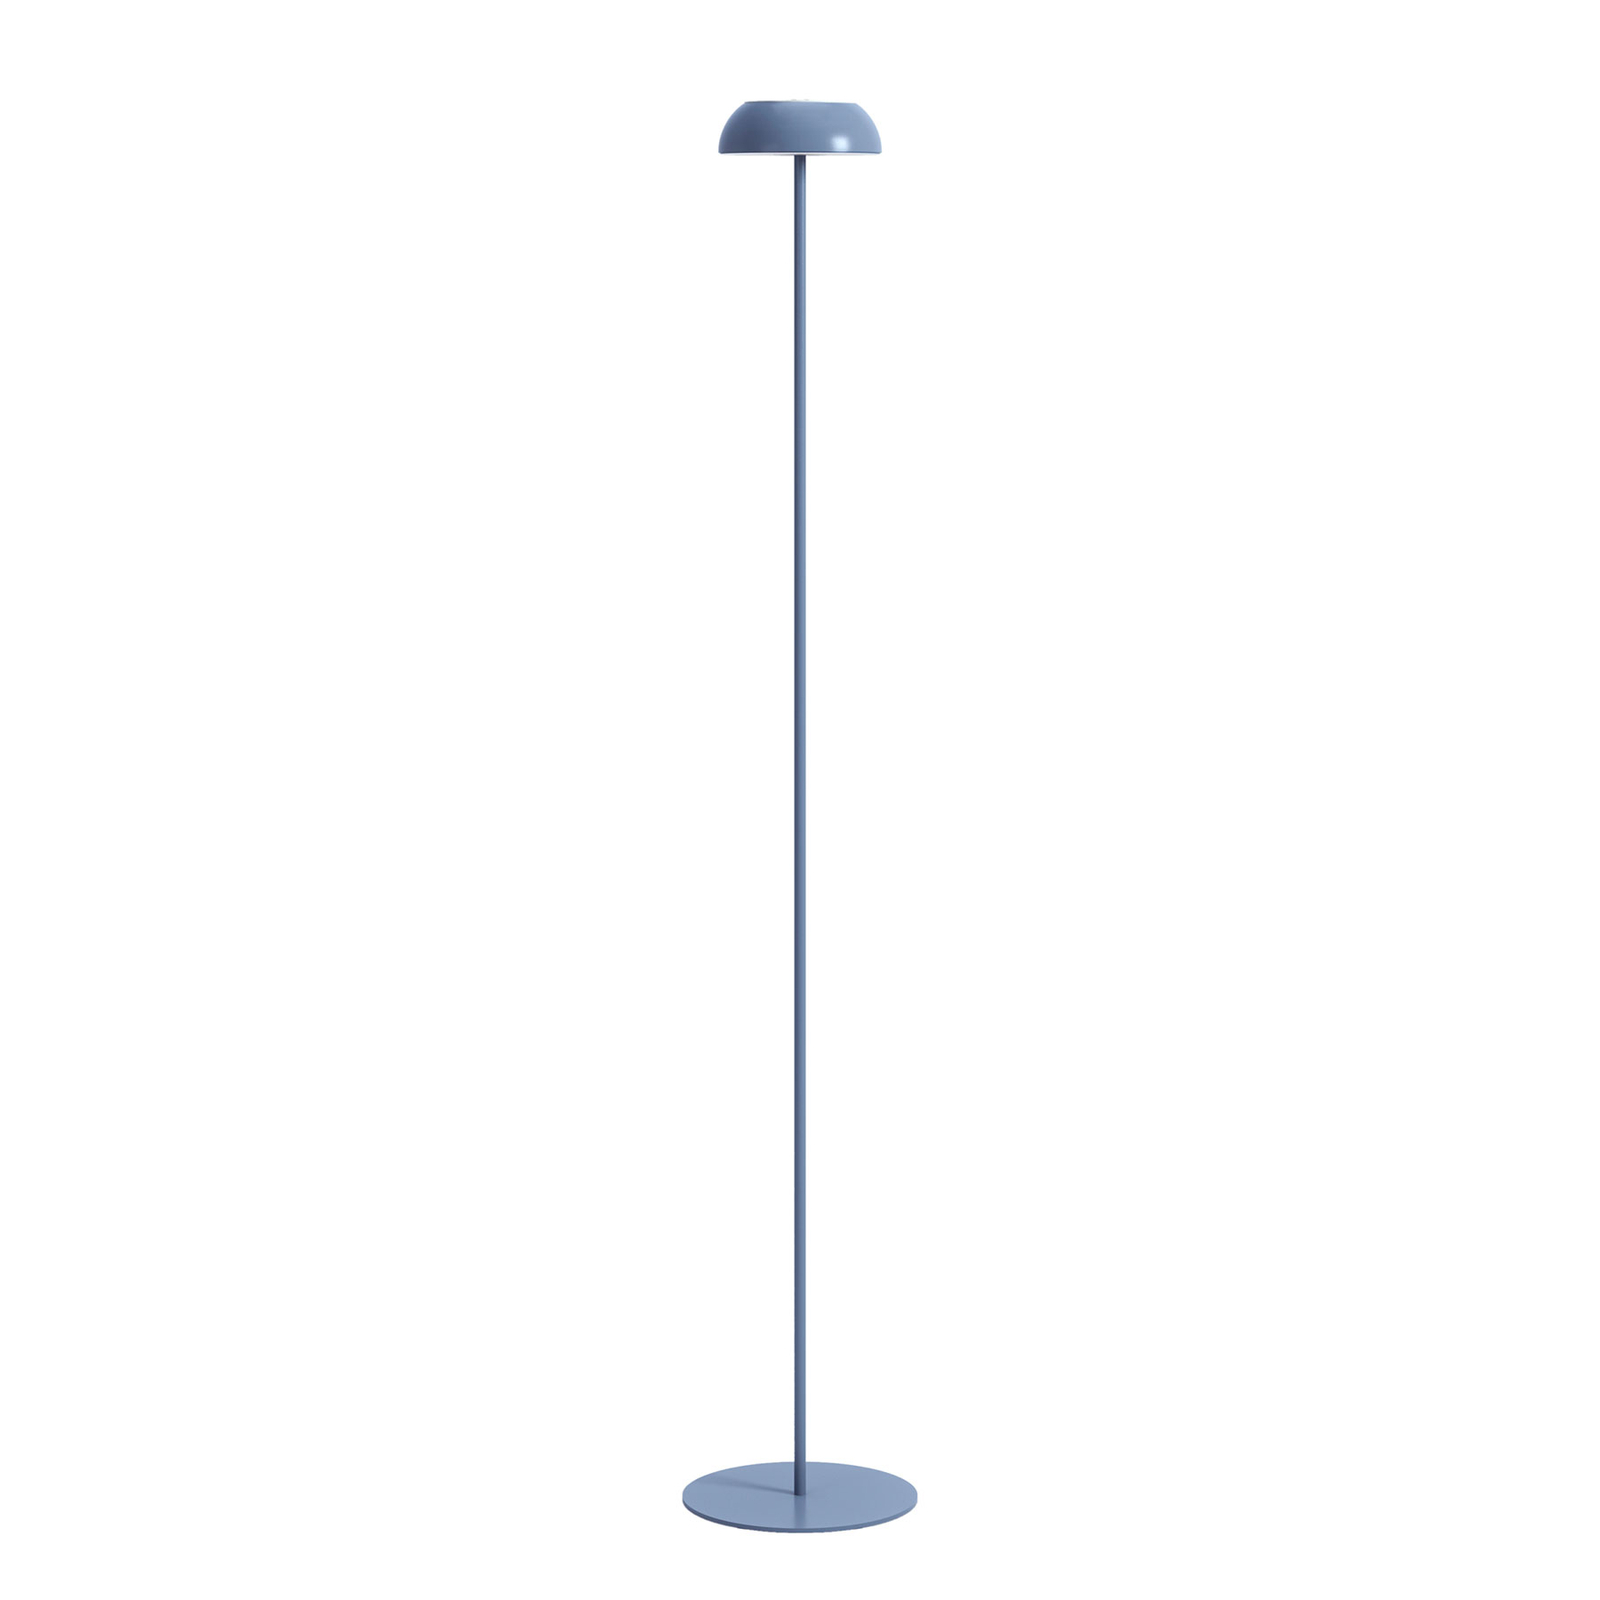 Productivo divorcio Una efectiva Axolight Float lámpara de pie LED de diseño | Lampara.es